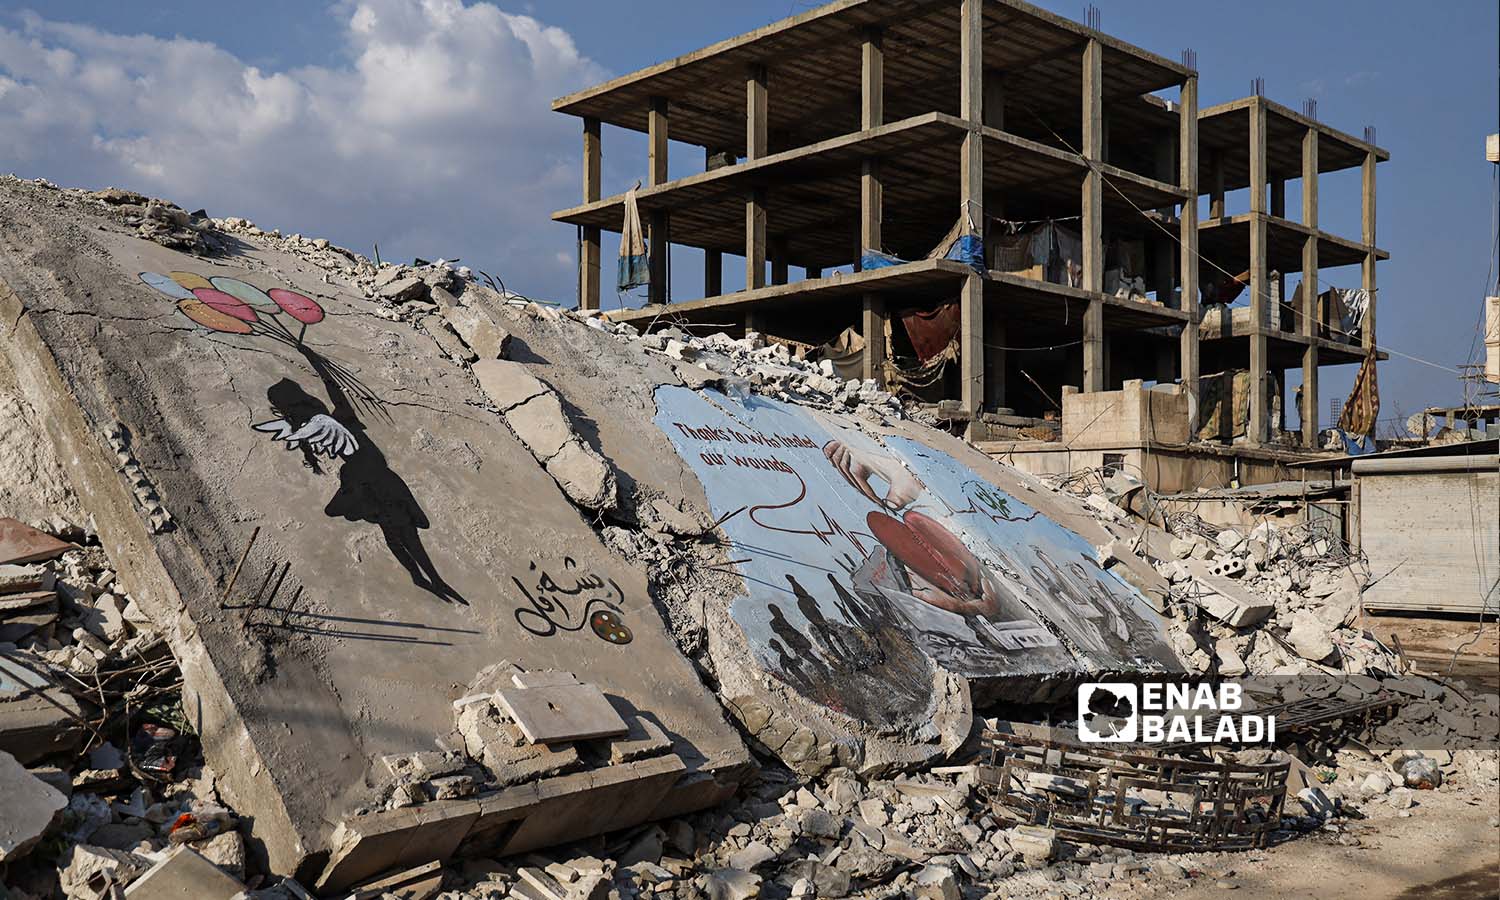  رسومات جرافيتي فوق ركام الأبنية الذي دمرها الزلزال في مدينة جنديرس بريف حلب - 24شباط 2023 (عنب بلدي/ أمير خربطلي)